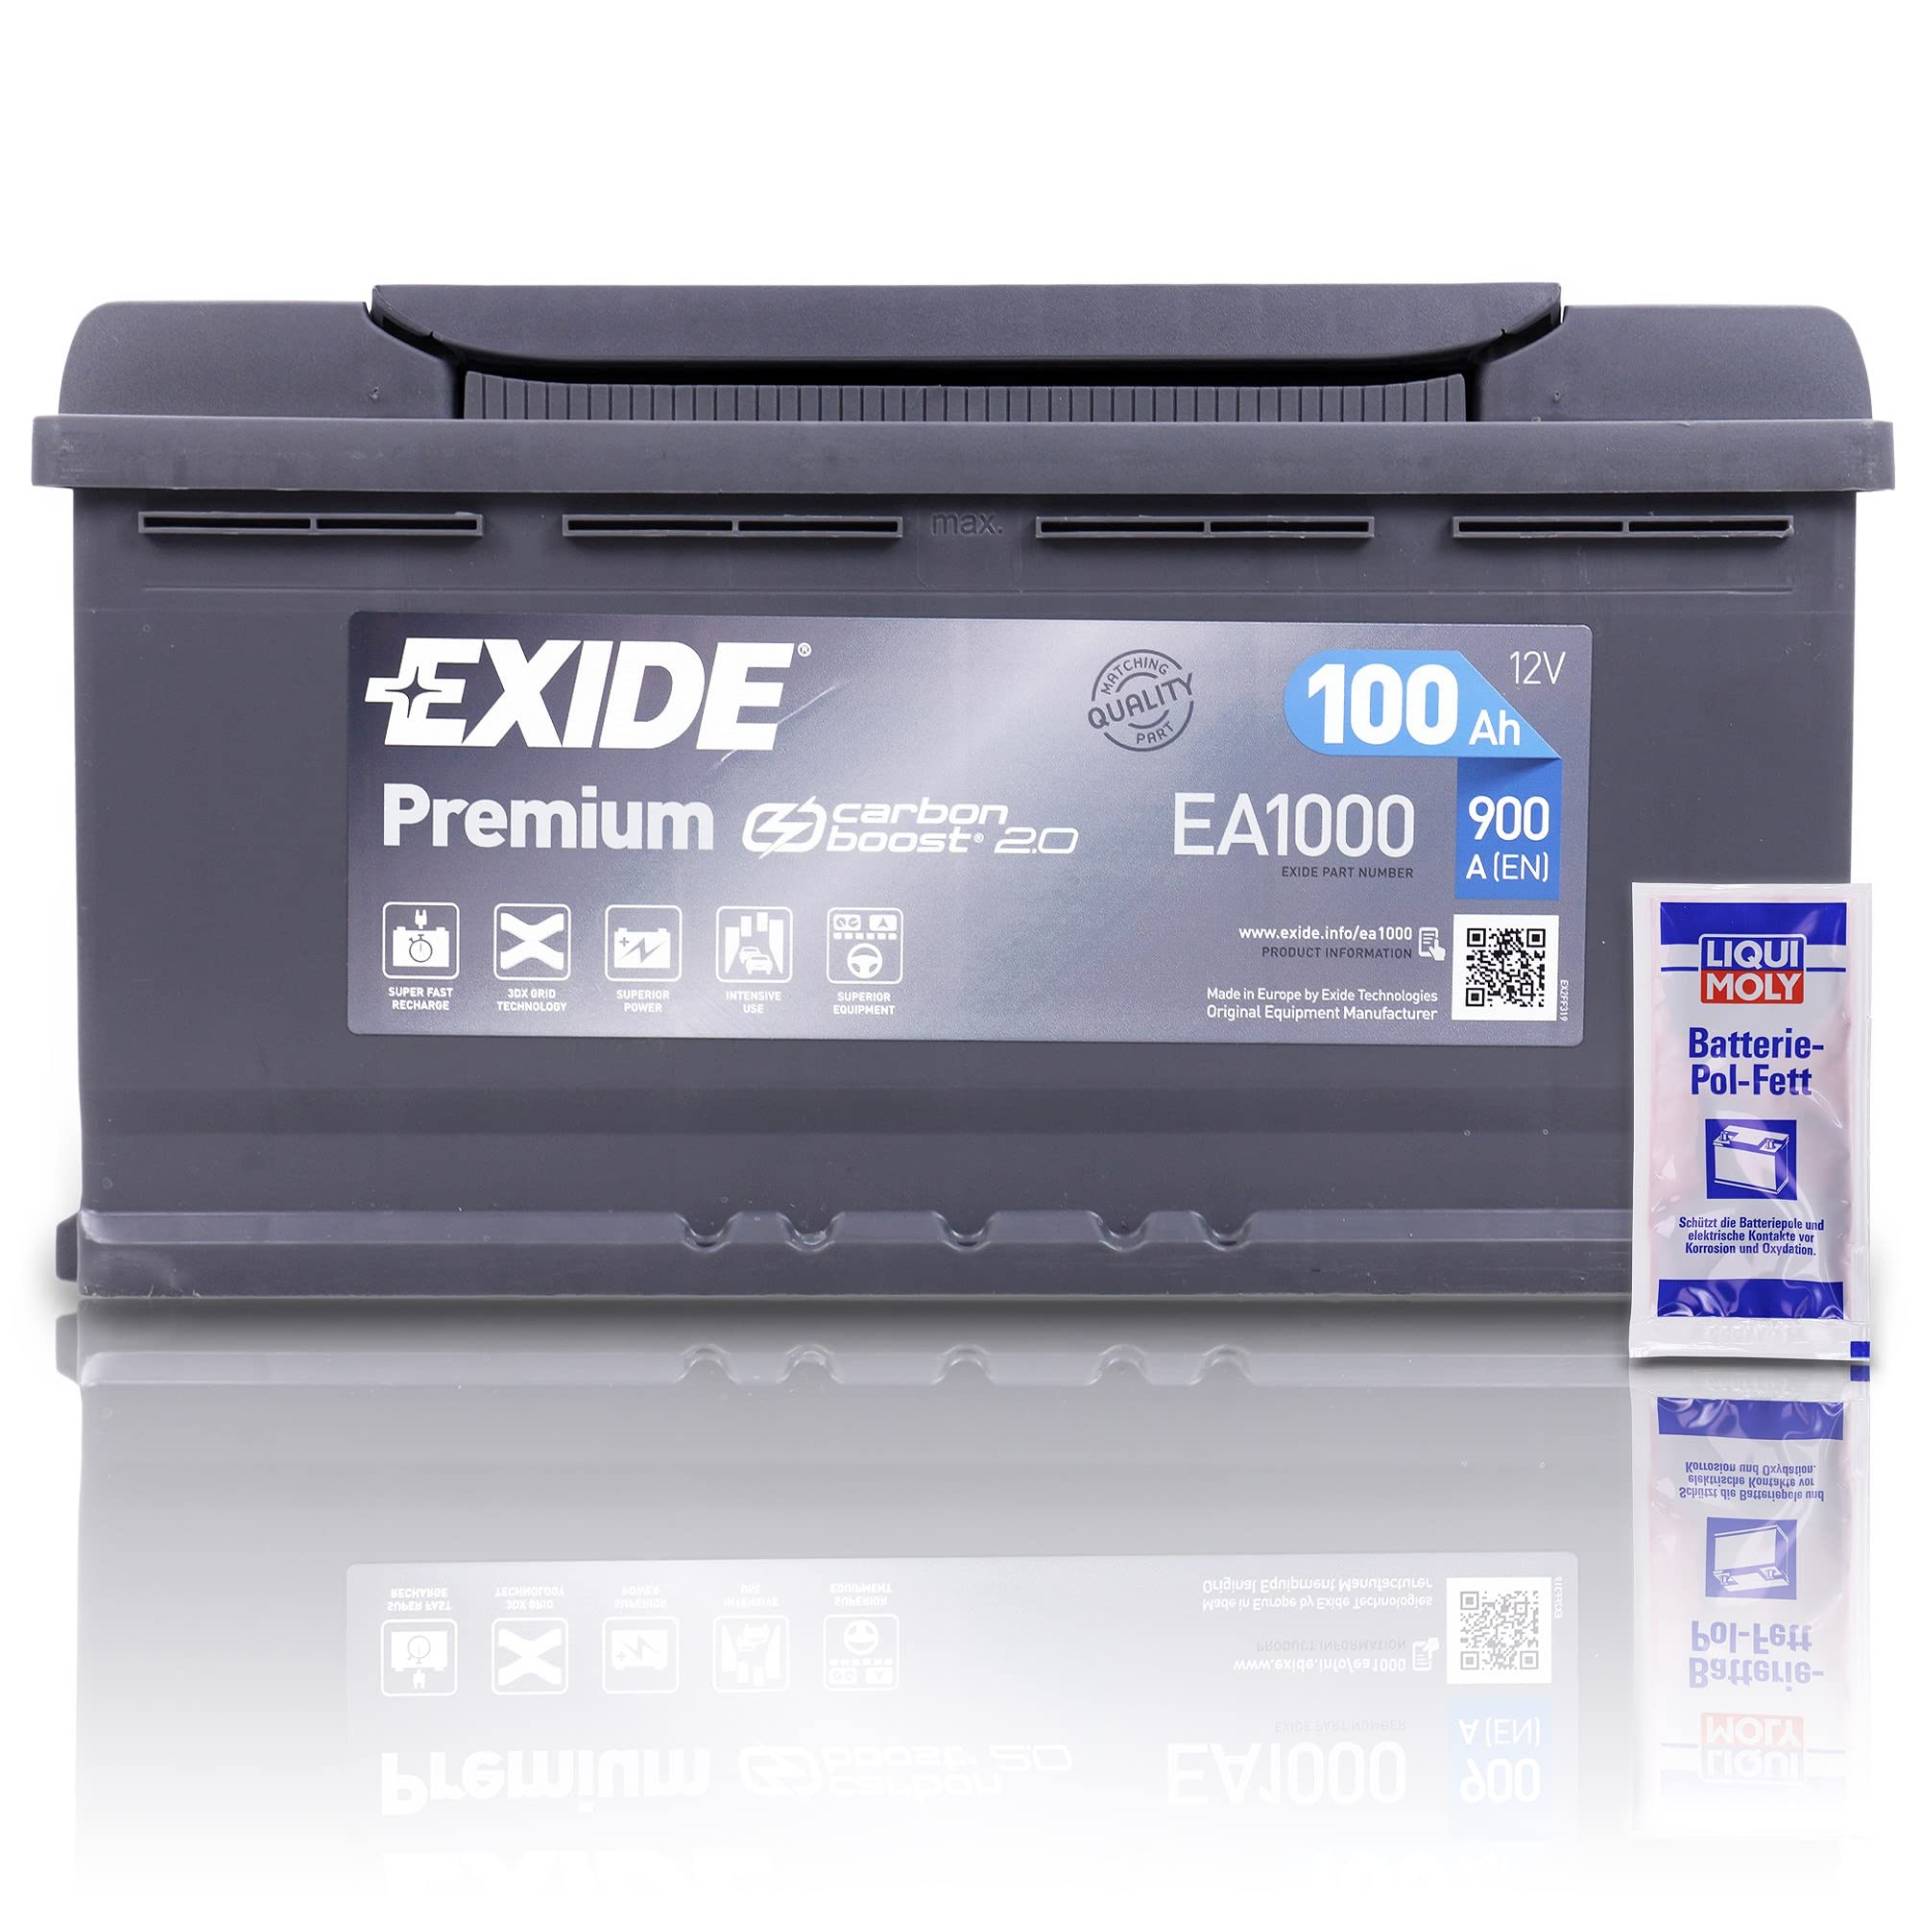 EXIDE EA1000 Premium Carbon Boost Autobatterie12V 100Ah 900A PKW KFZ Starterbatterie Batterie - Ersetzt 85Ah 88Ah 90Ah 92Ah 95Ah + 1x Batteriepolfett von EXIDE